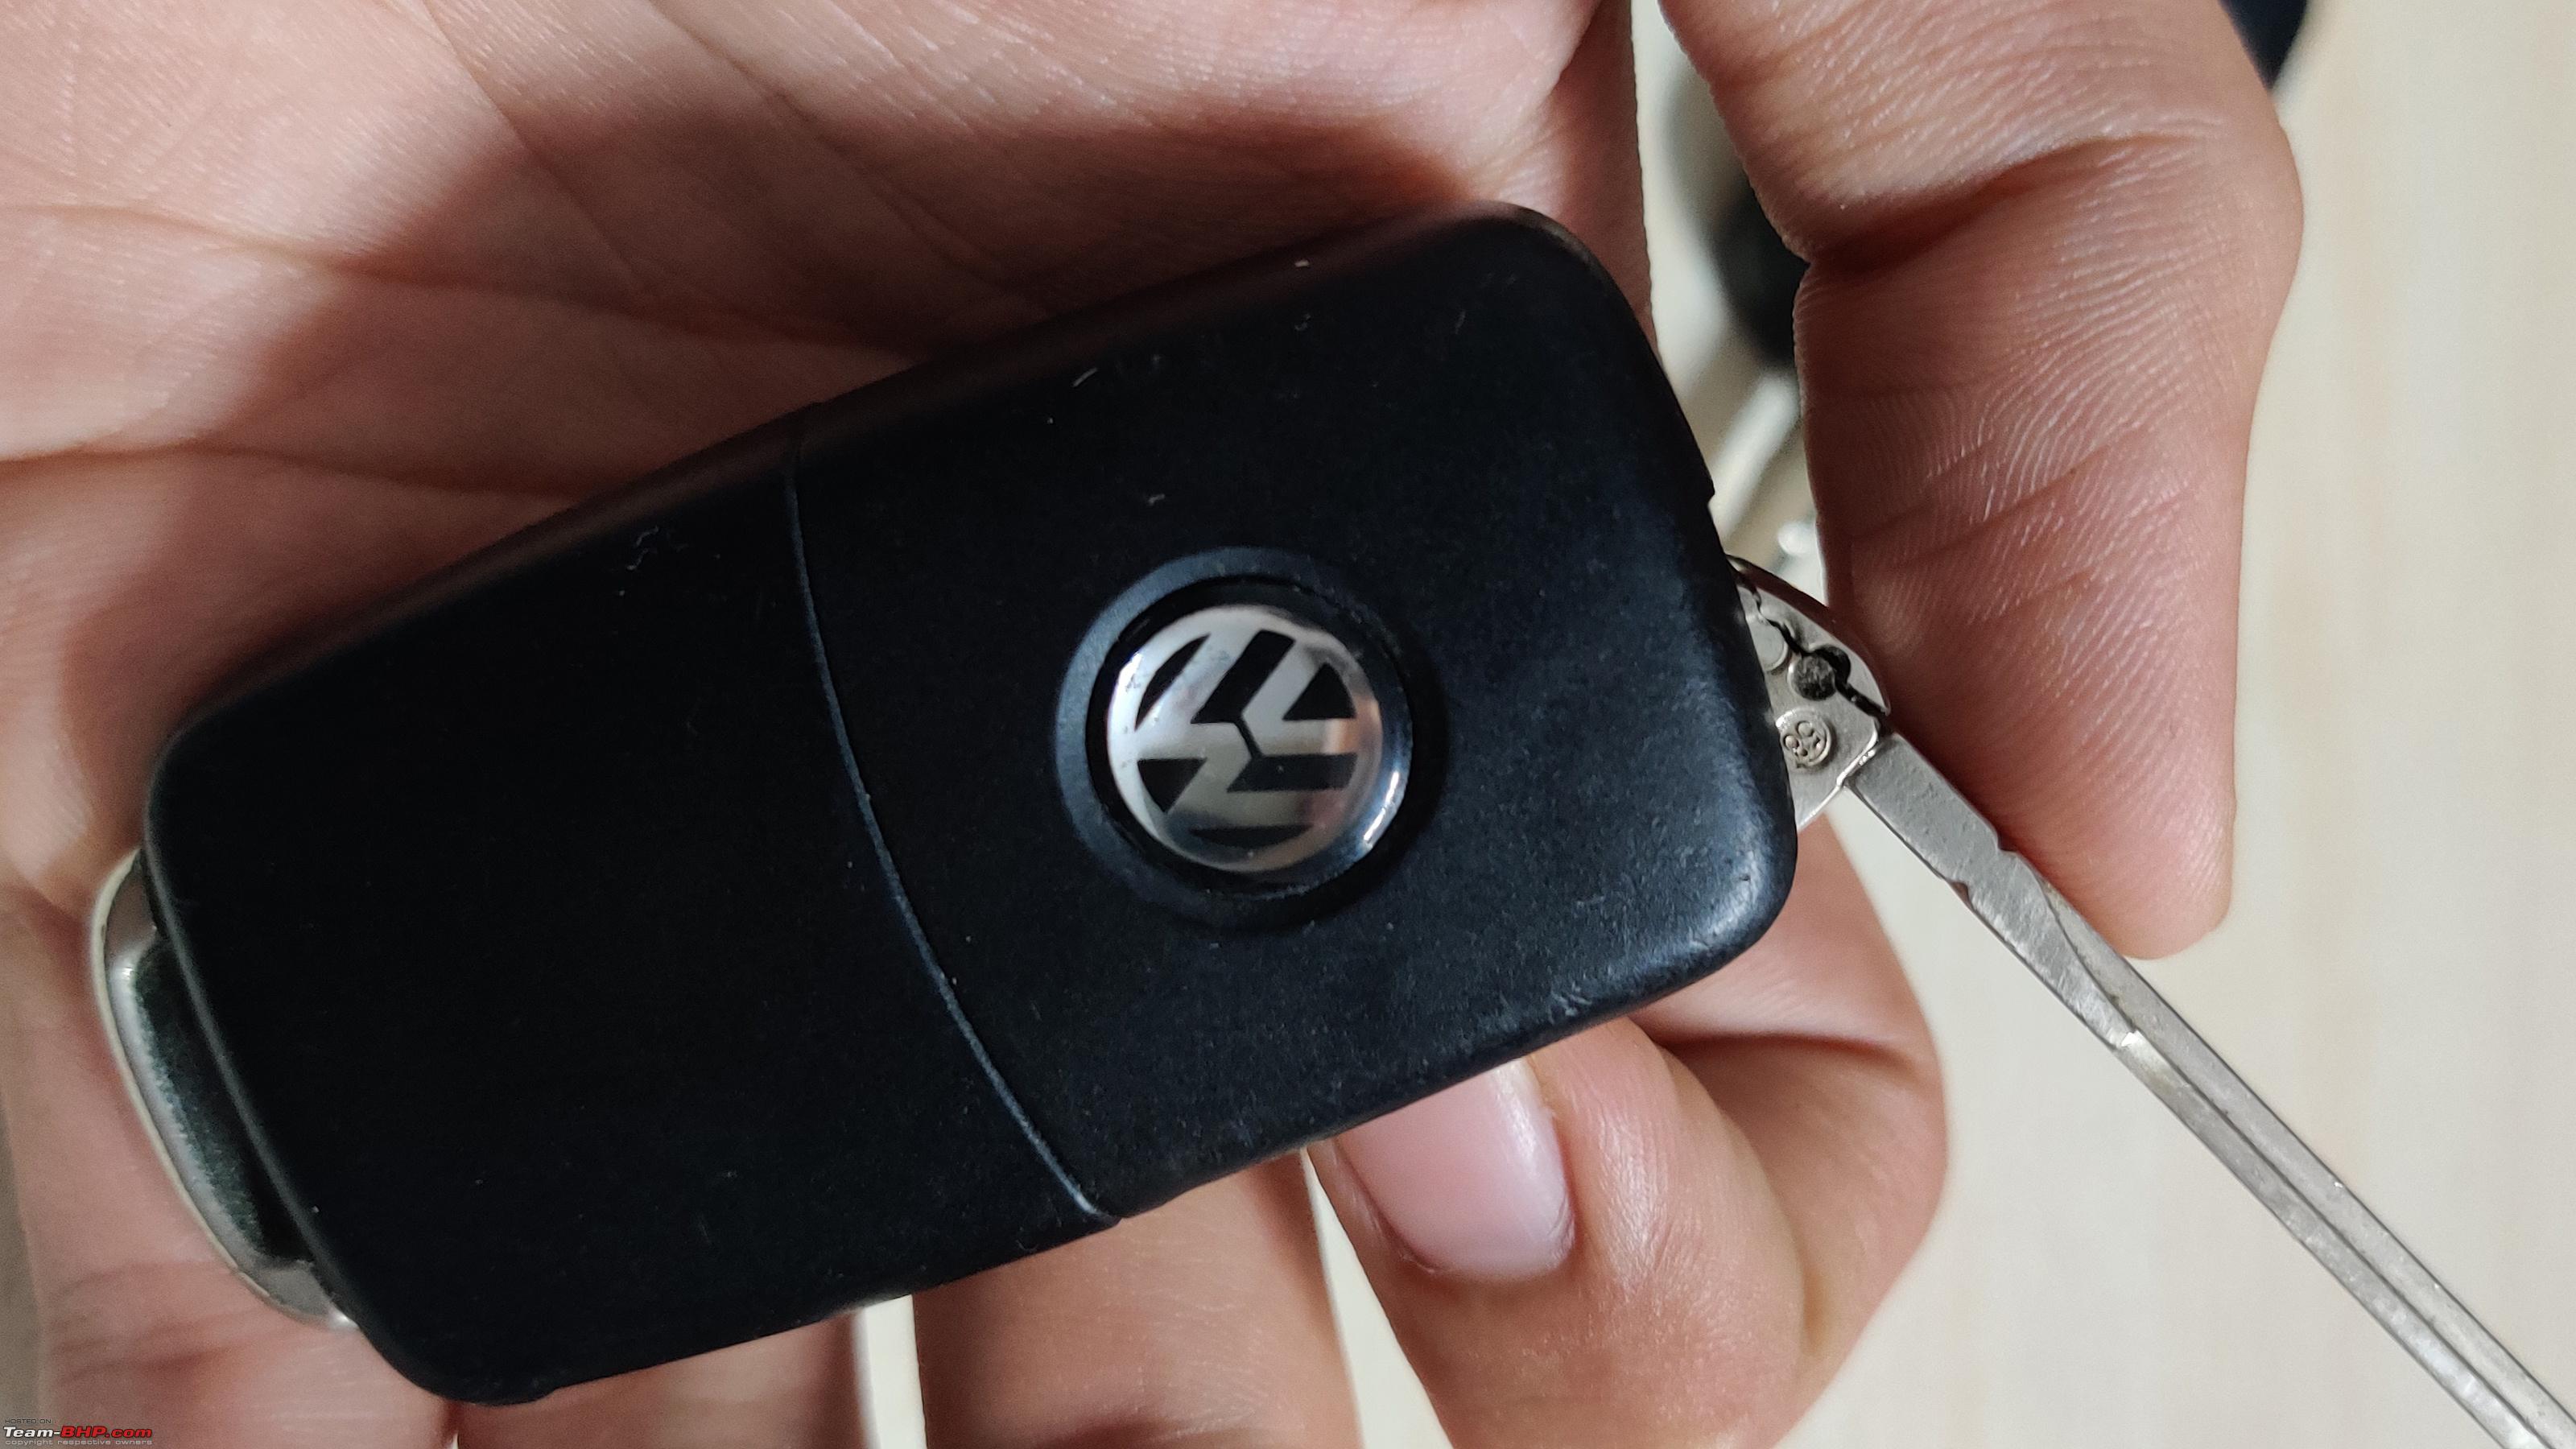 Avoid Fake VW Keys!!